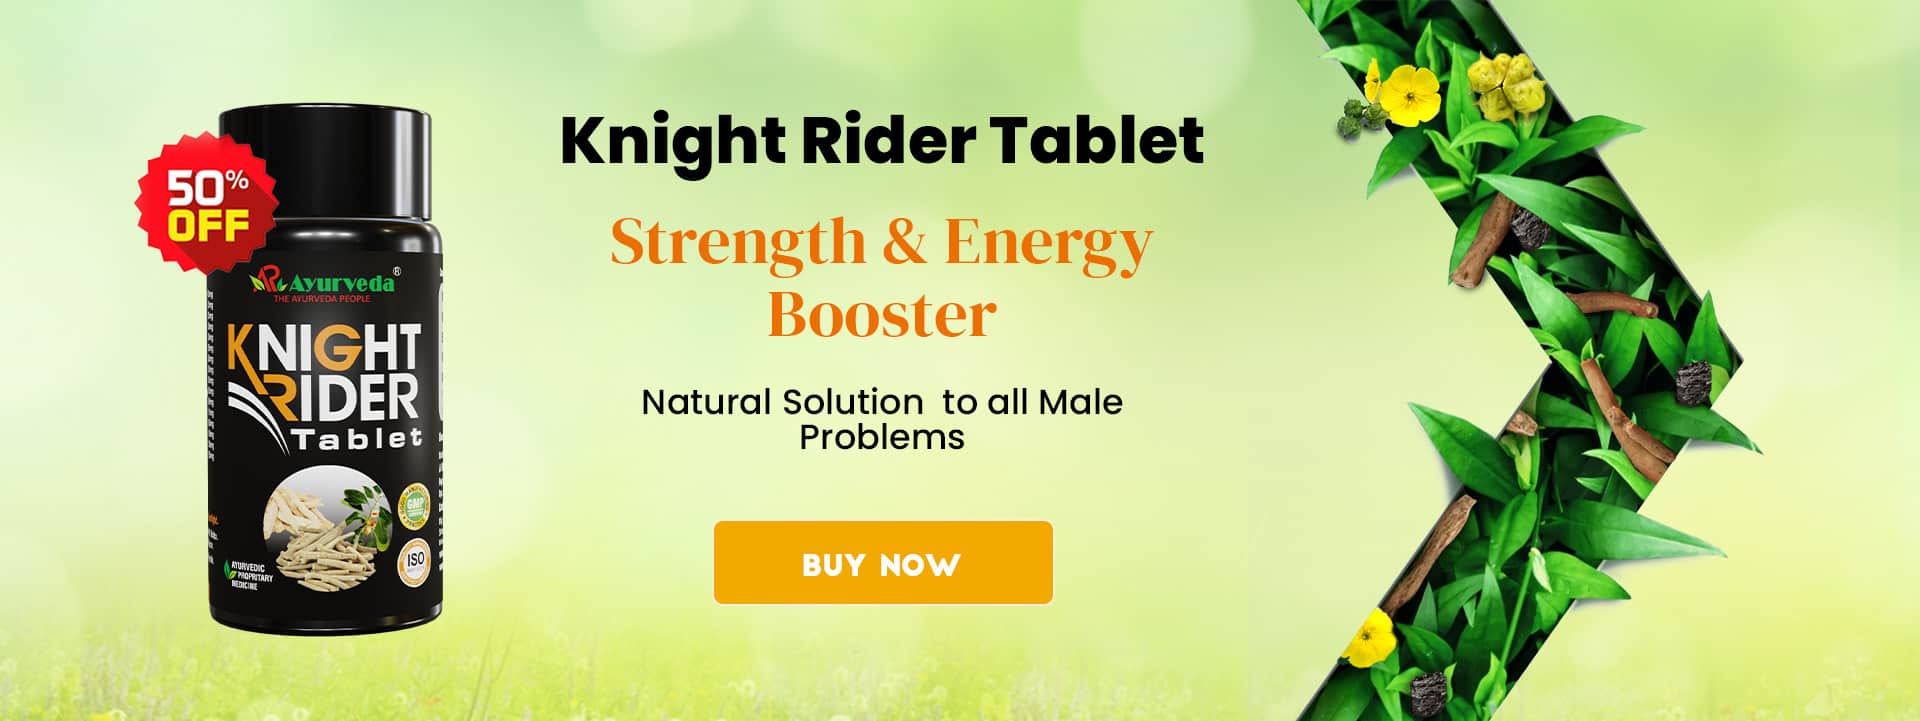 Knight Rider Tablet